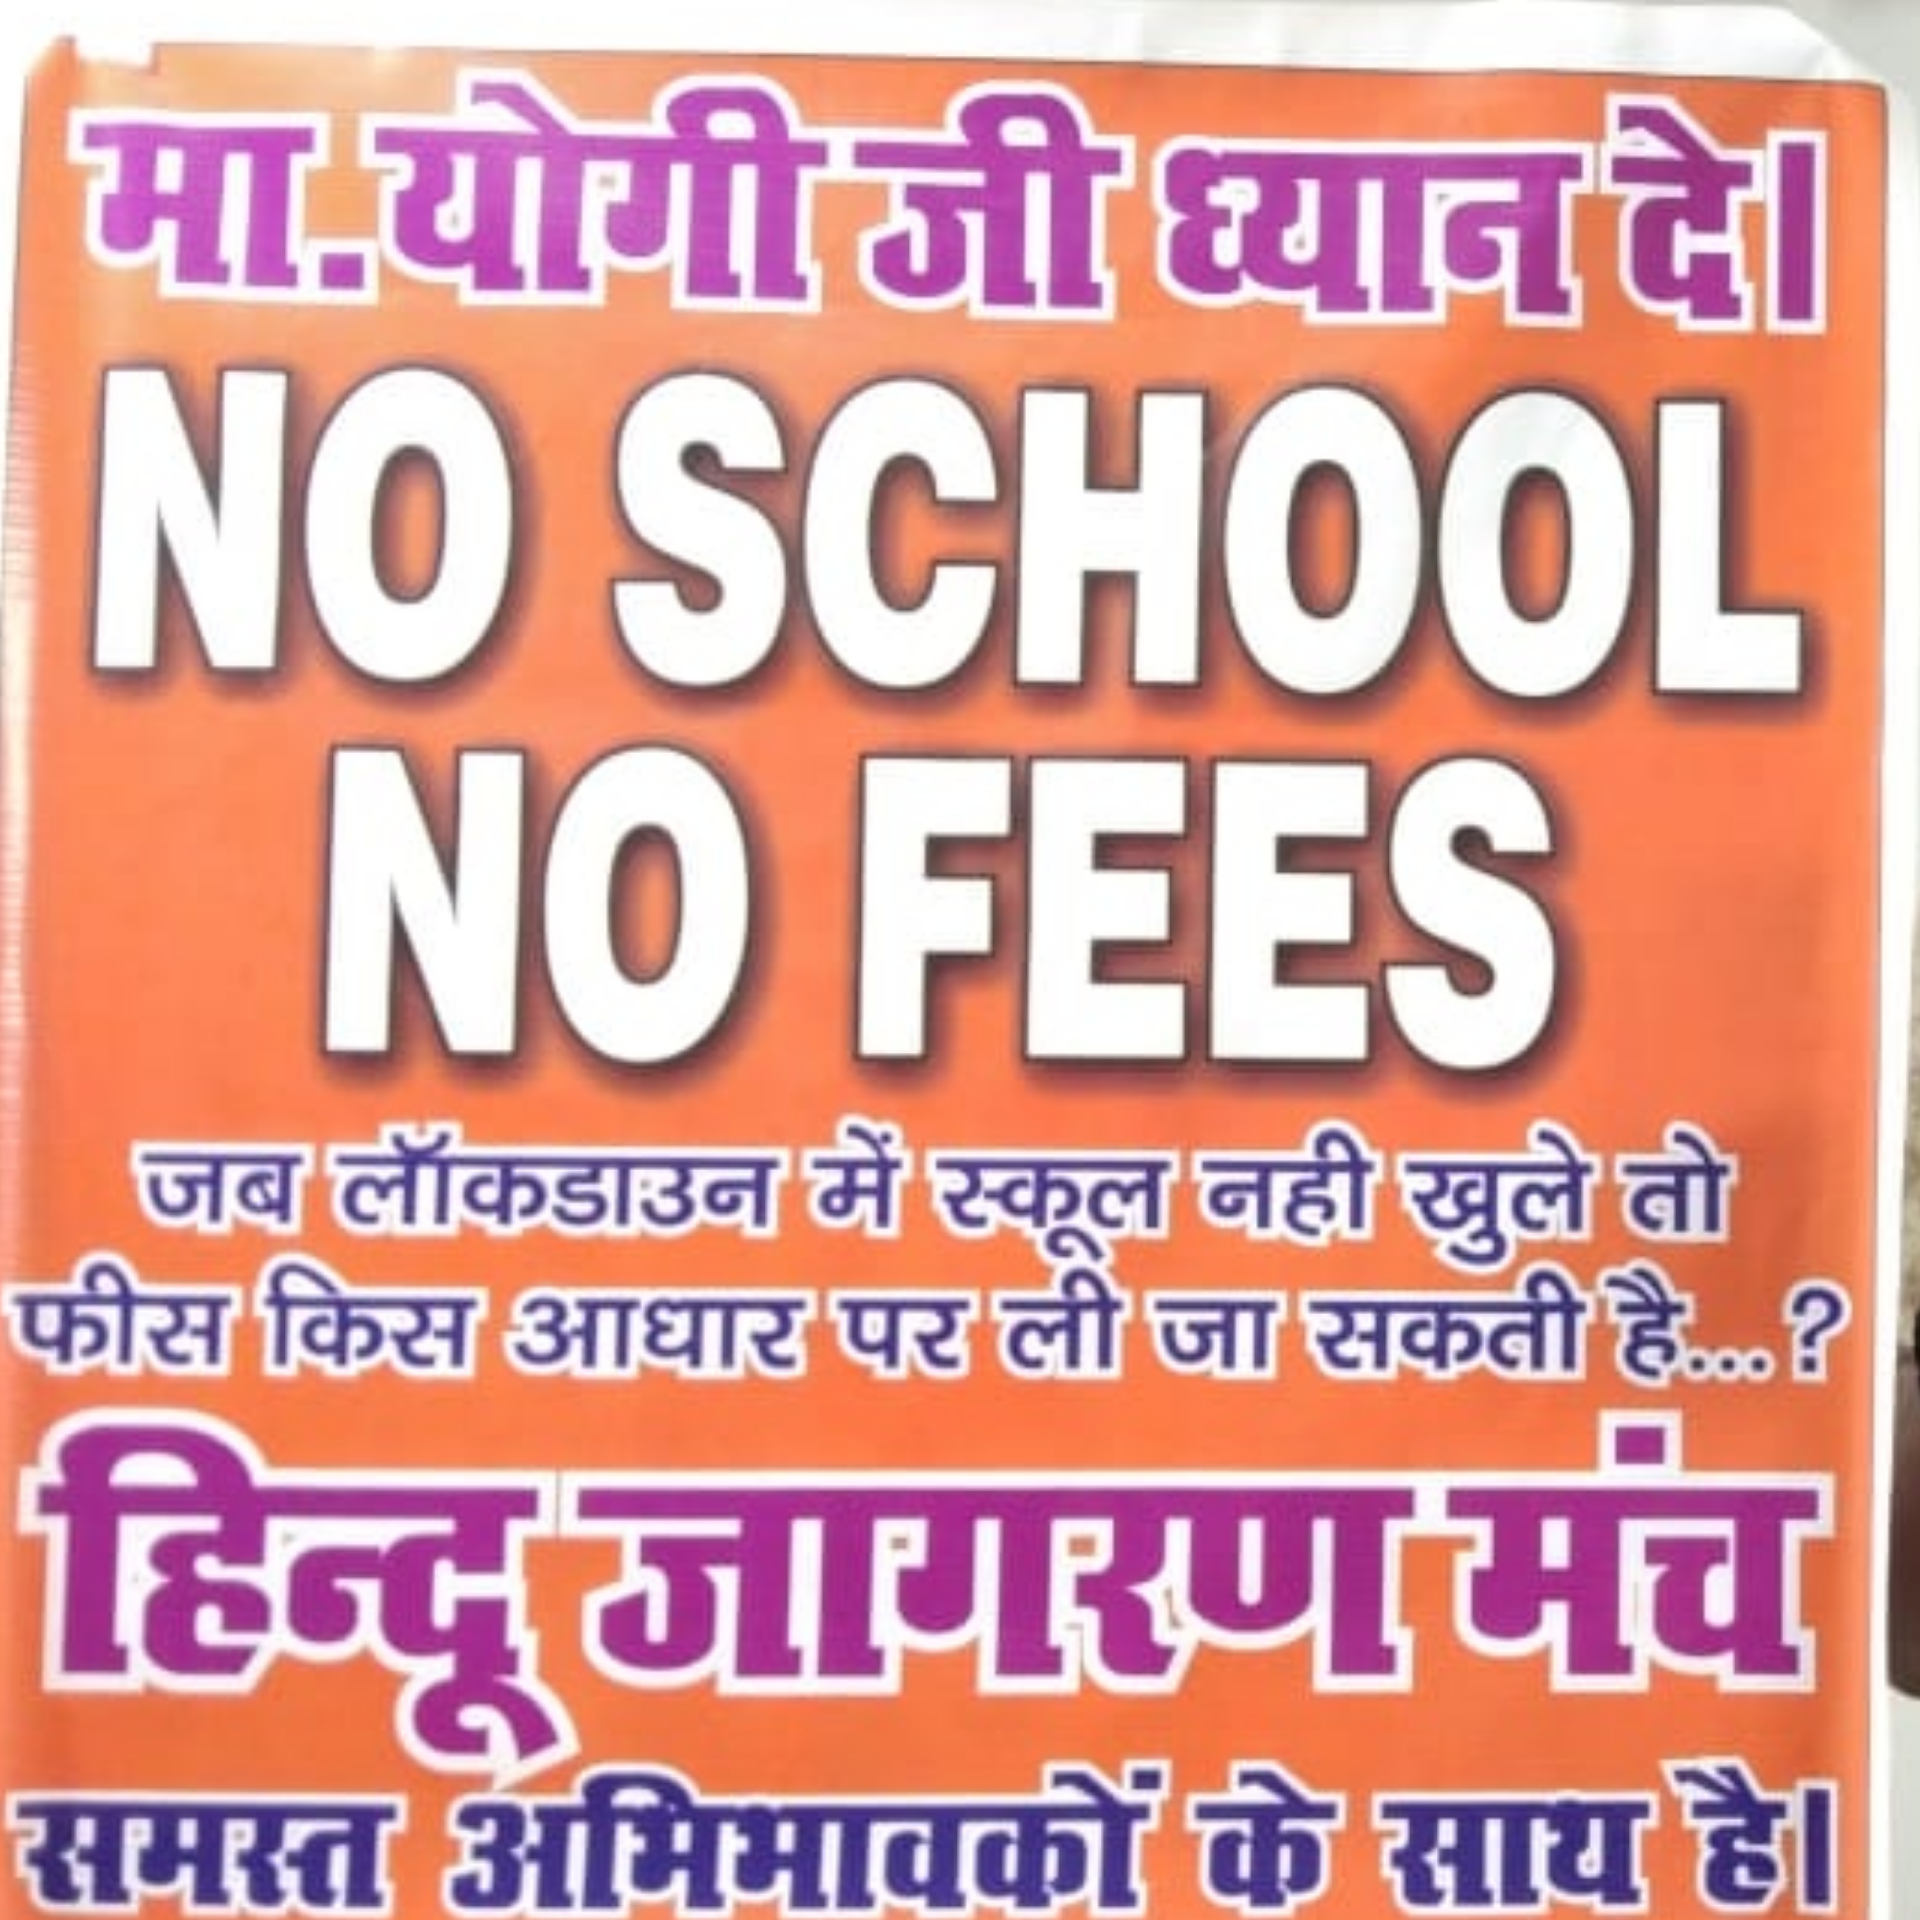 NO SCHOOL - NO FEES को मिला समर्थन, कई स्कूलों ने फीस ना लेने की घोषणा की